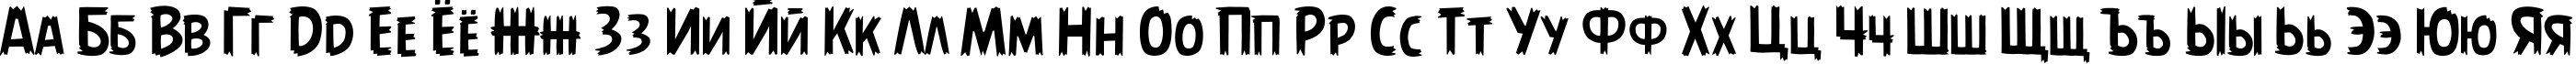 Пример написания русского алфавита шрифтом AngryBirds Regular